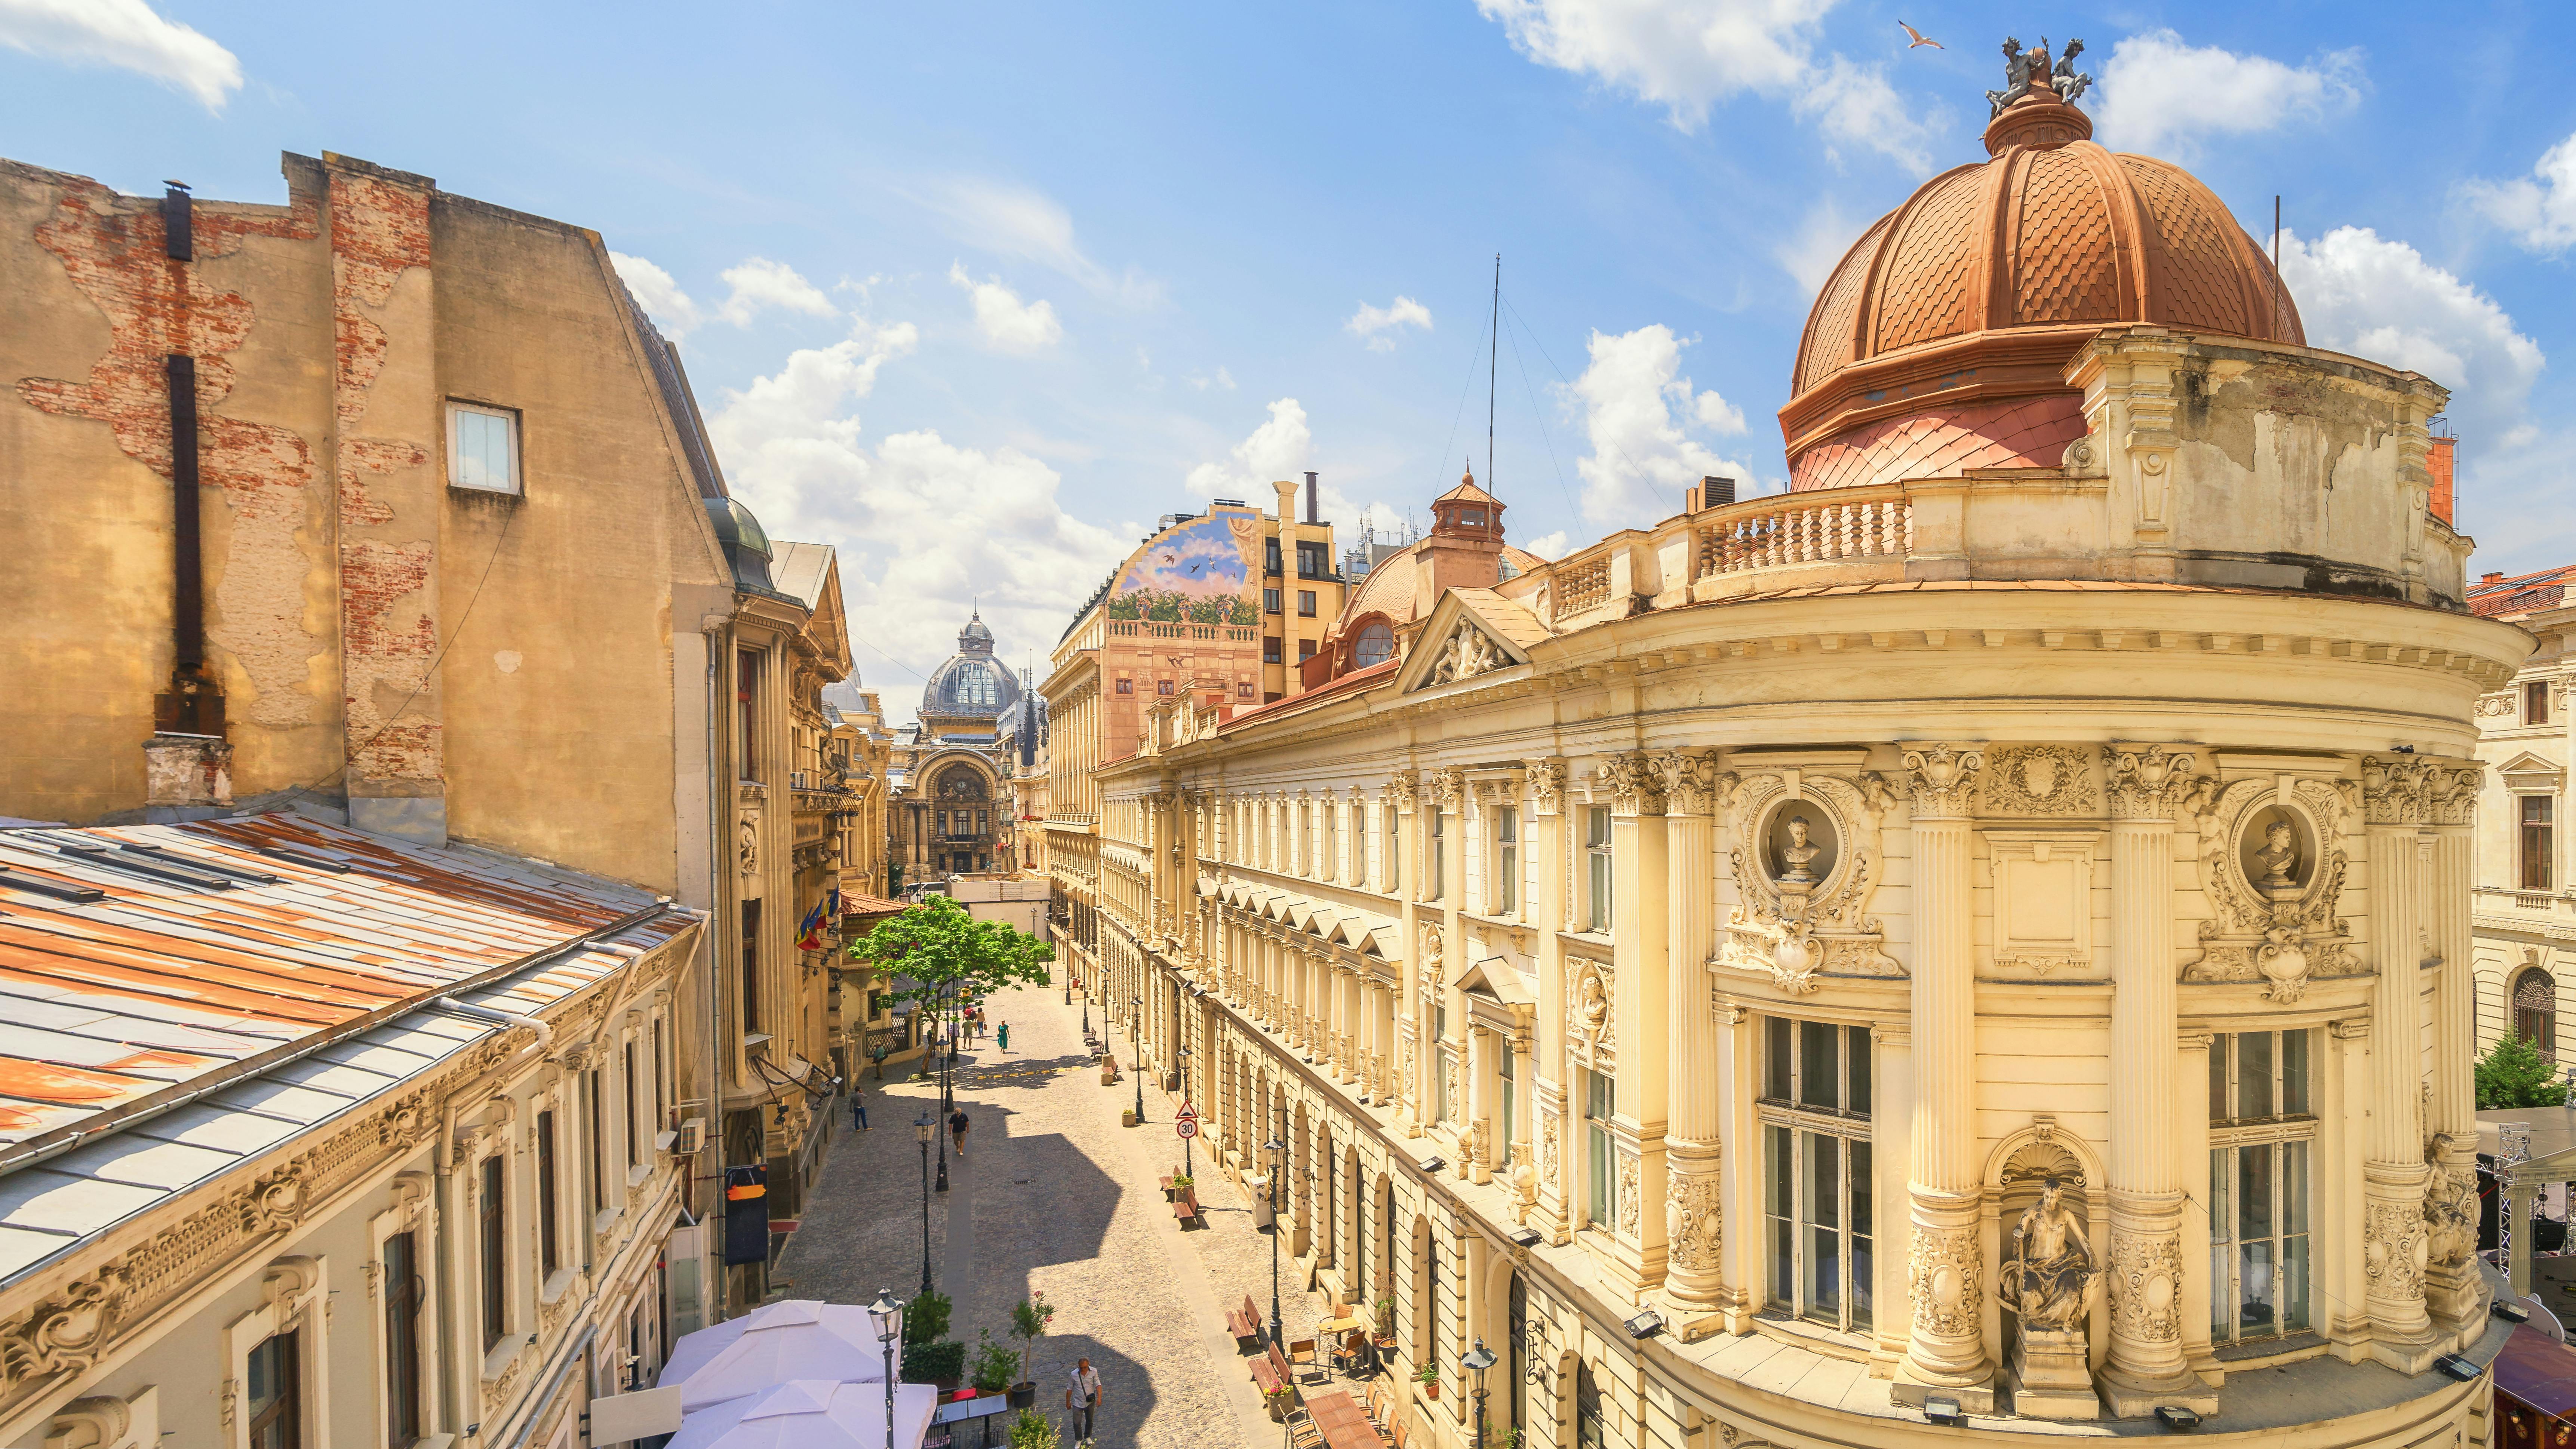 Gra miejska w Bukareszcie – tajemnice Starego Miasta i ukryte skarby